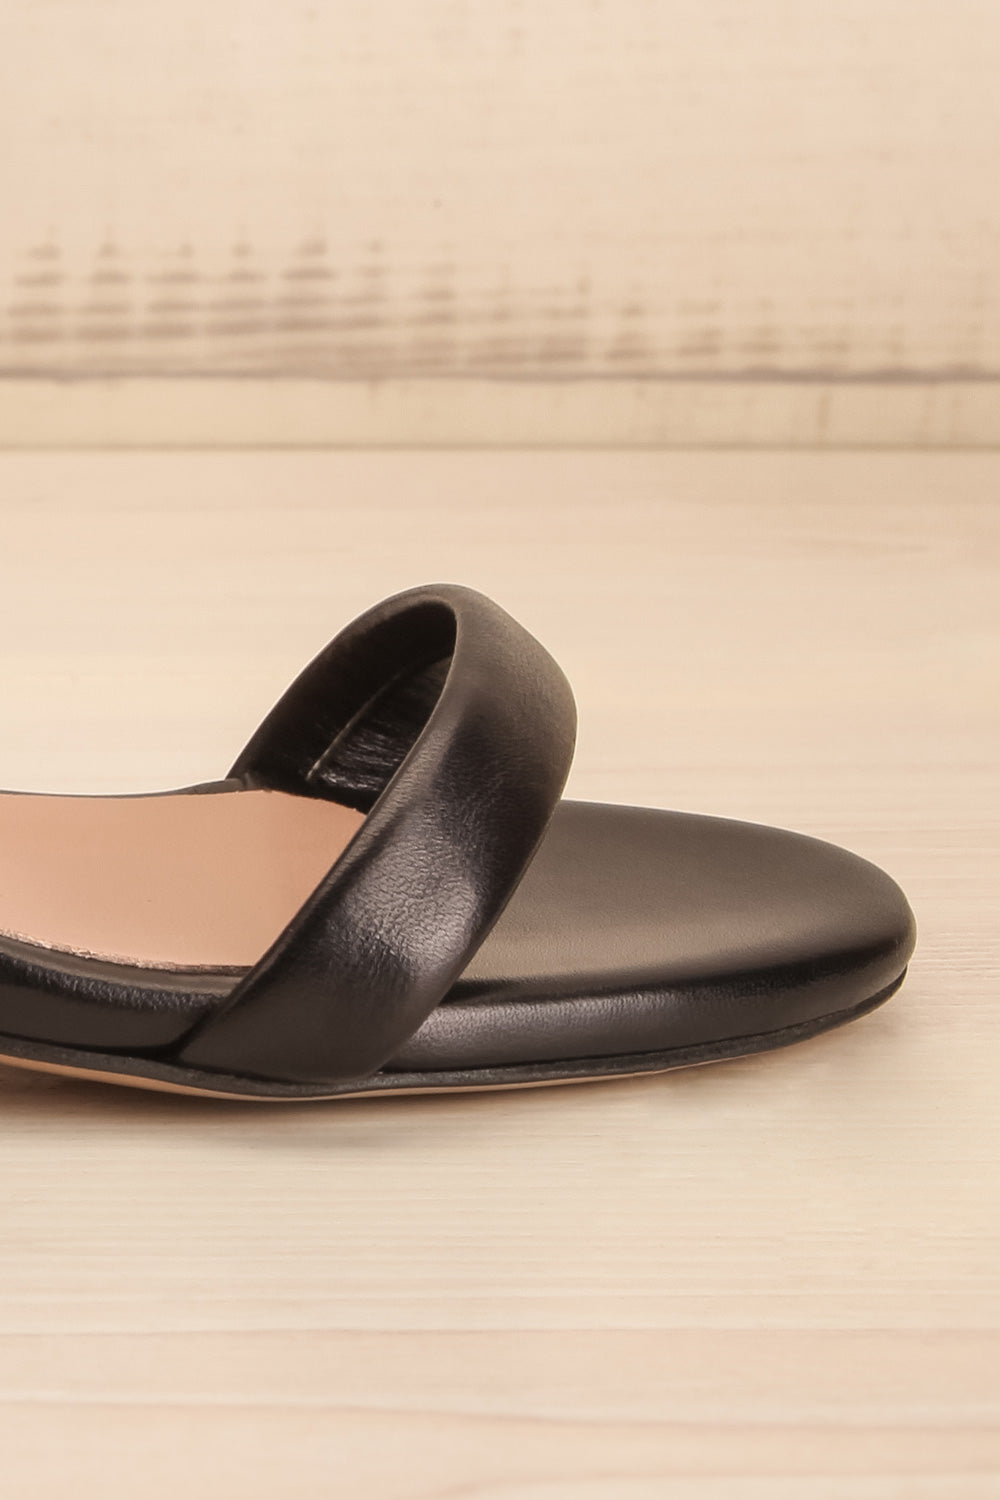 Cubisme Strappy Block Heel leather Sandals | La petite garçonne side close-up